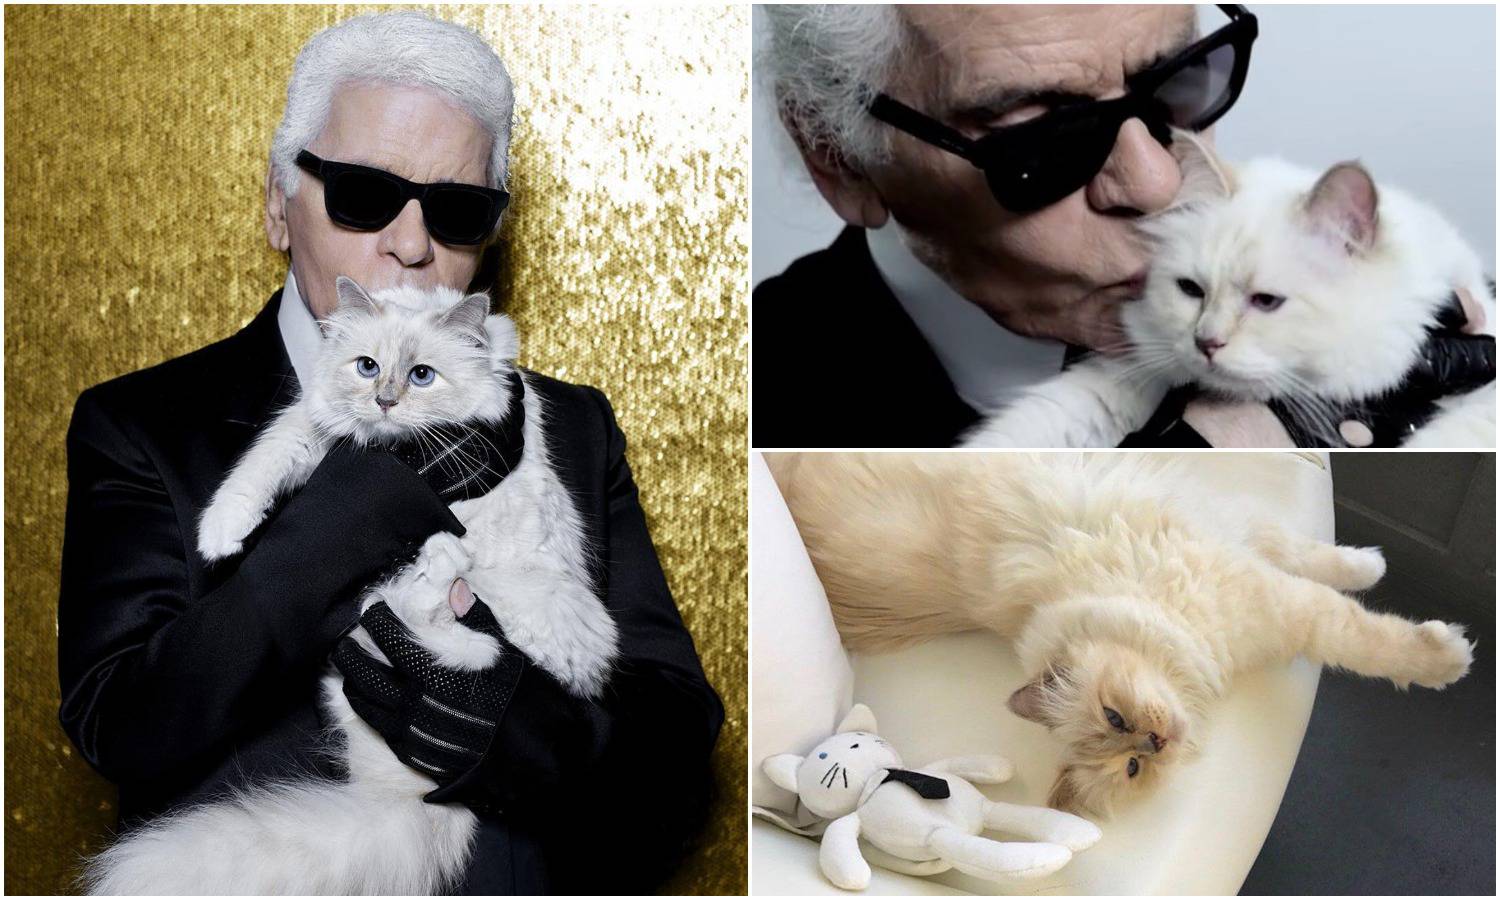 Velika ljubav dizajnera i mačka: 'Da mogu, oženio bih se za nju'